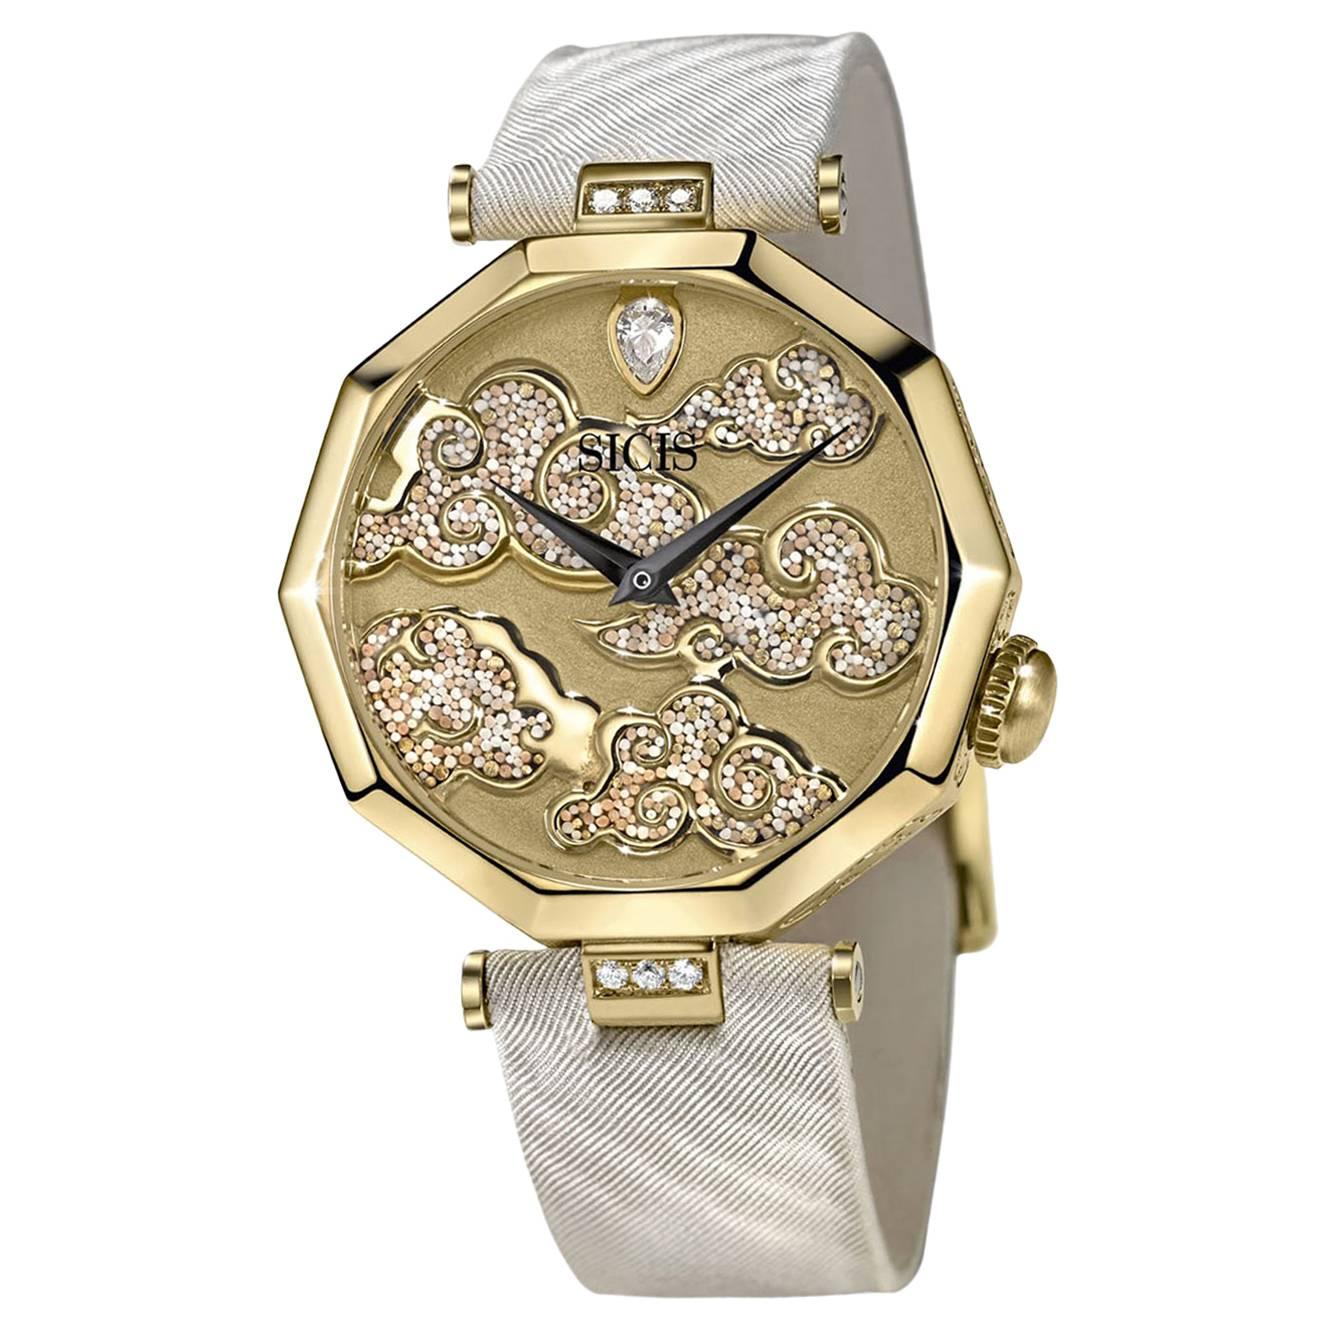 Elegante stilvolle Armbanduhr in Gold mit weißem Diamant-Etui, von Hand verziert mit Mikromosaik